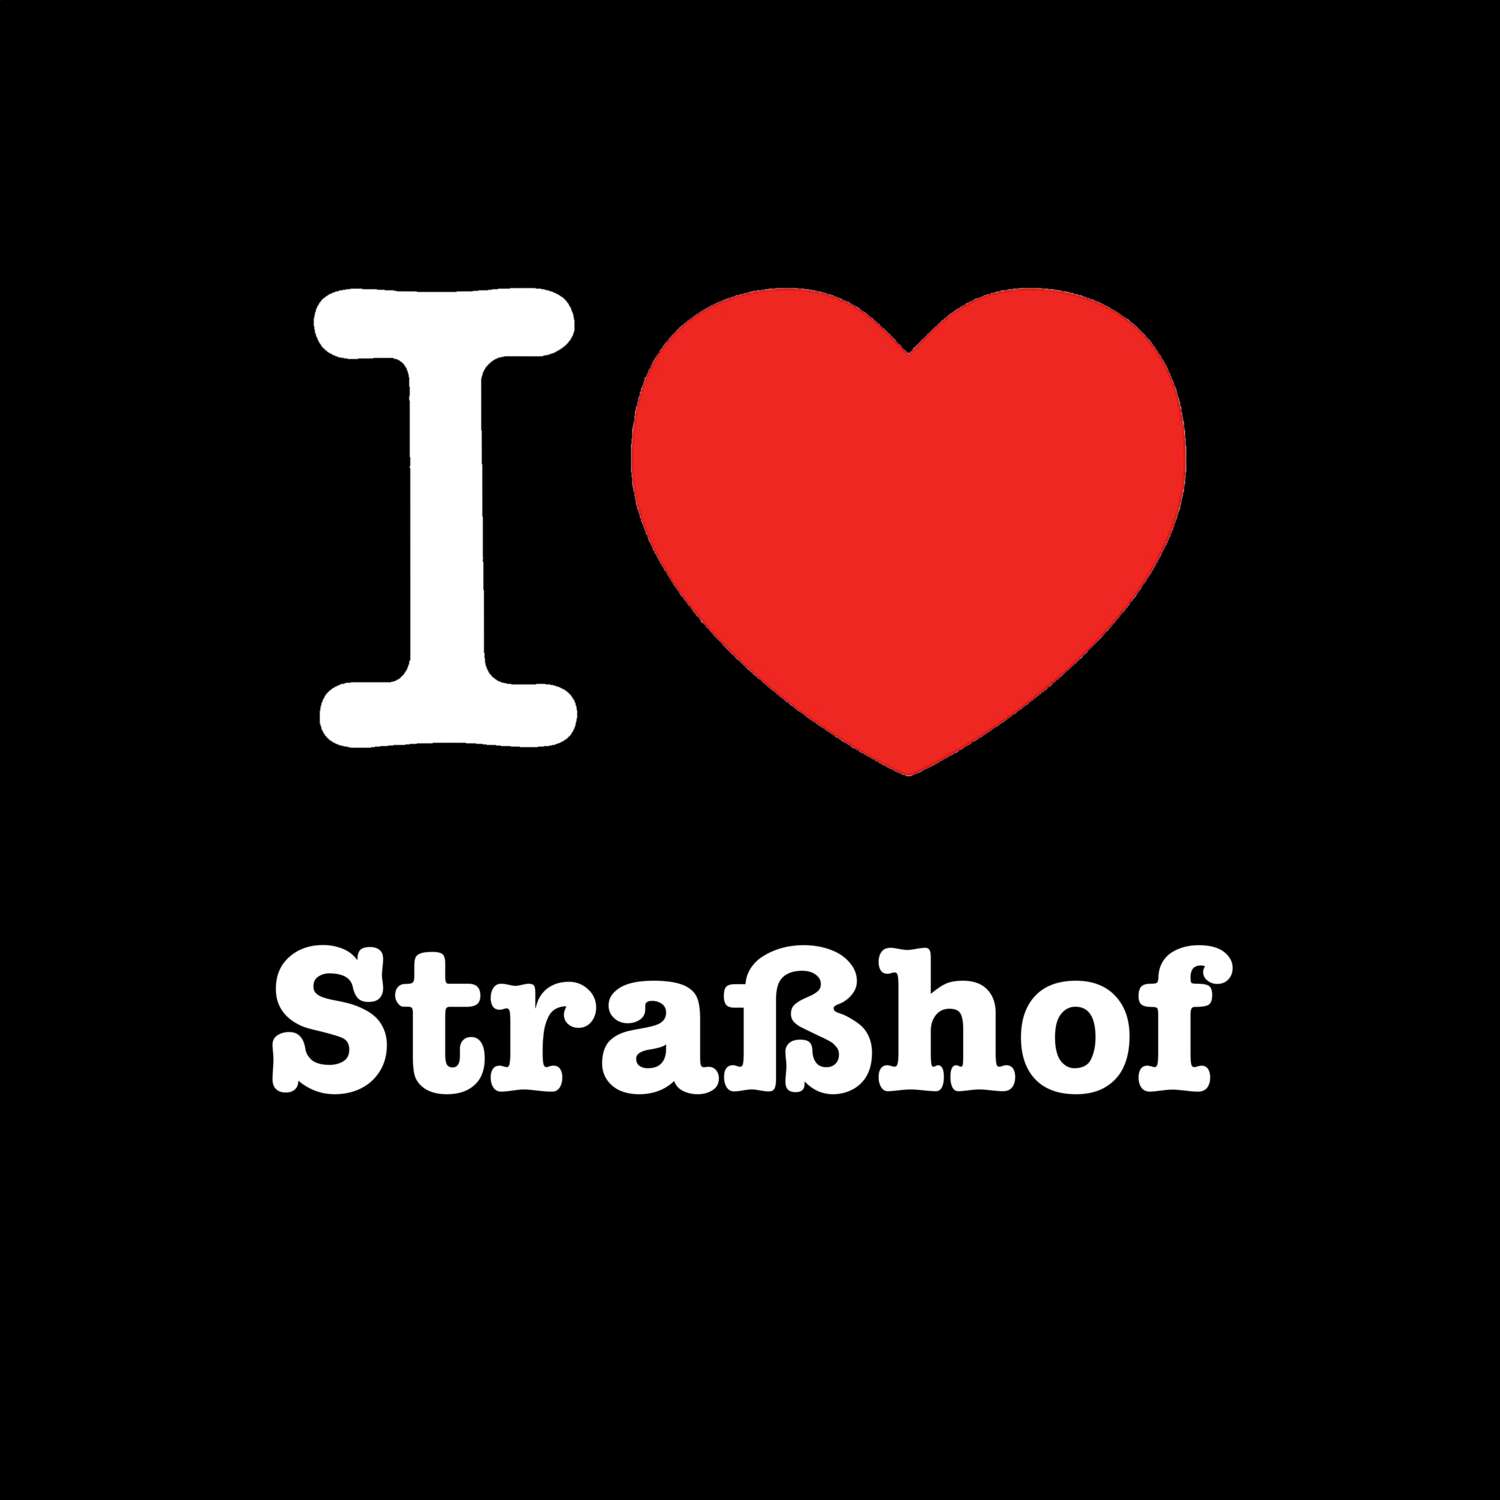 Straßhof T-Shirt »I love«